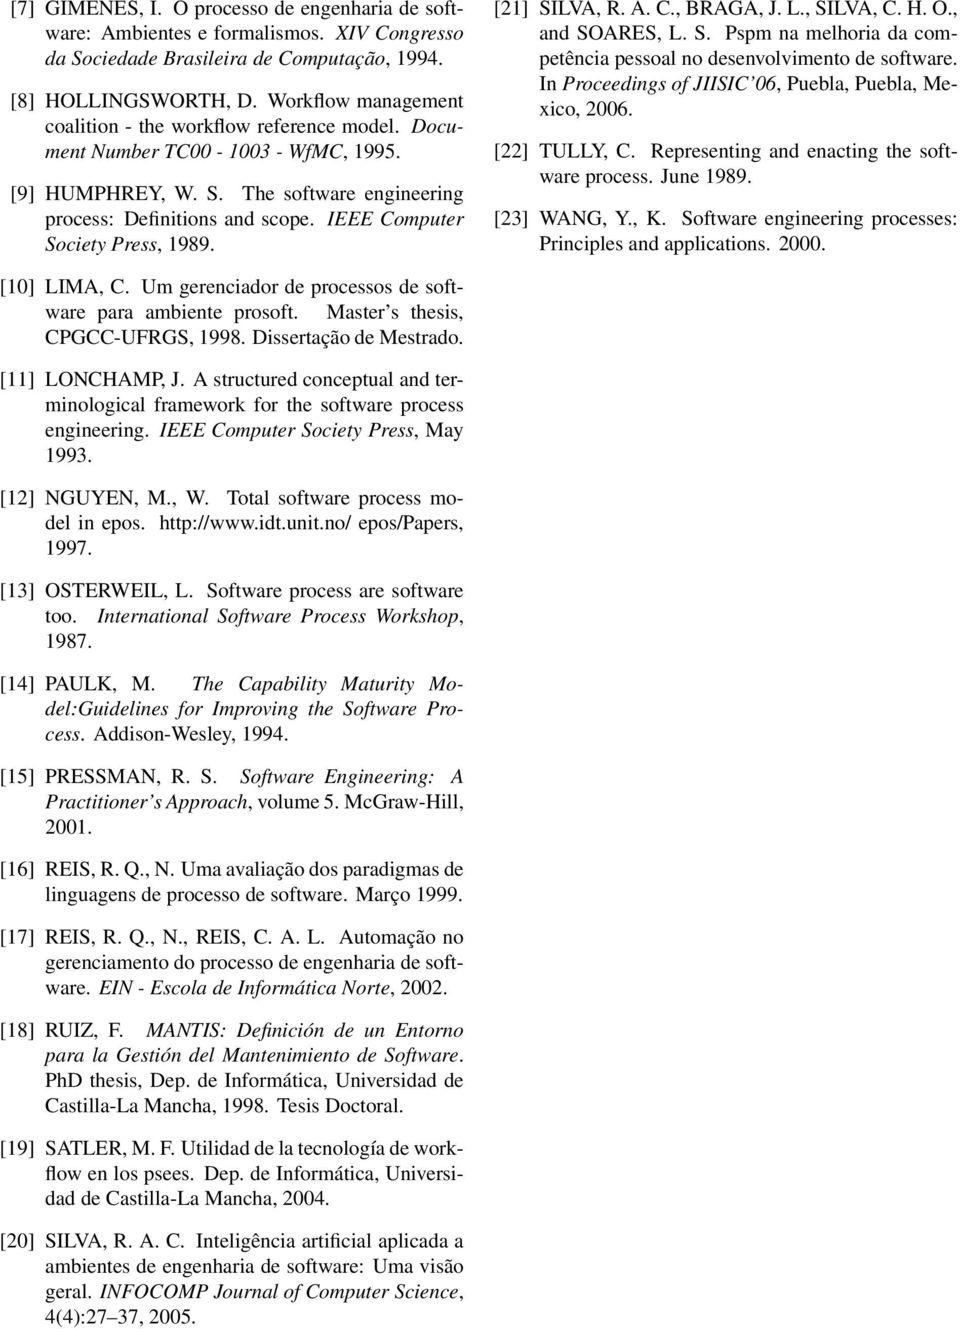 IEEE Computer Society Press, 1989. [21] SILVA, R. A. C., BRAGA, J. L., SILVA, C. H. O., and SOARES, L. S. Pspm na melhoria da competência pessoal no desenvolvimento de software.